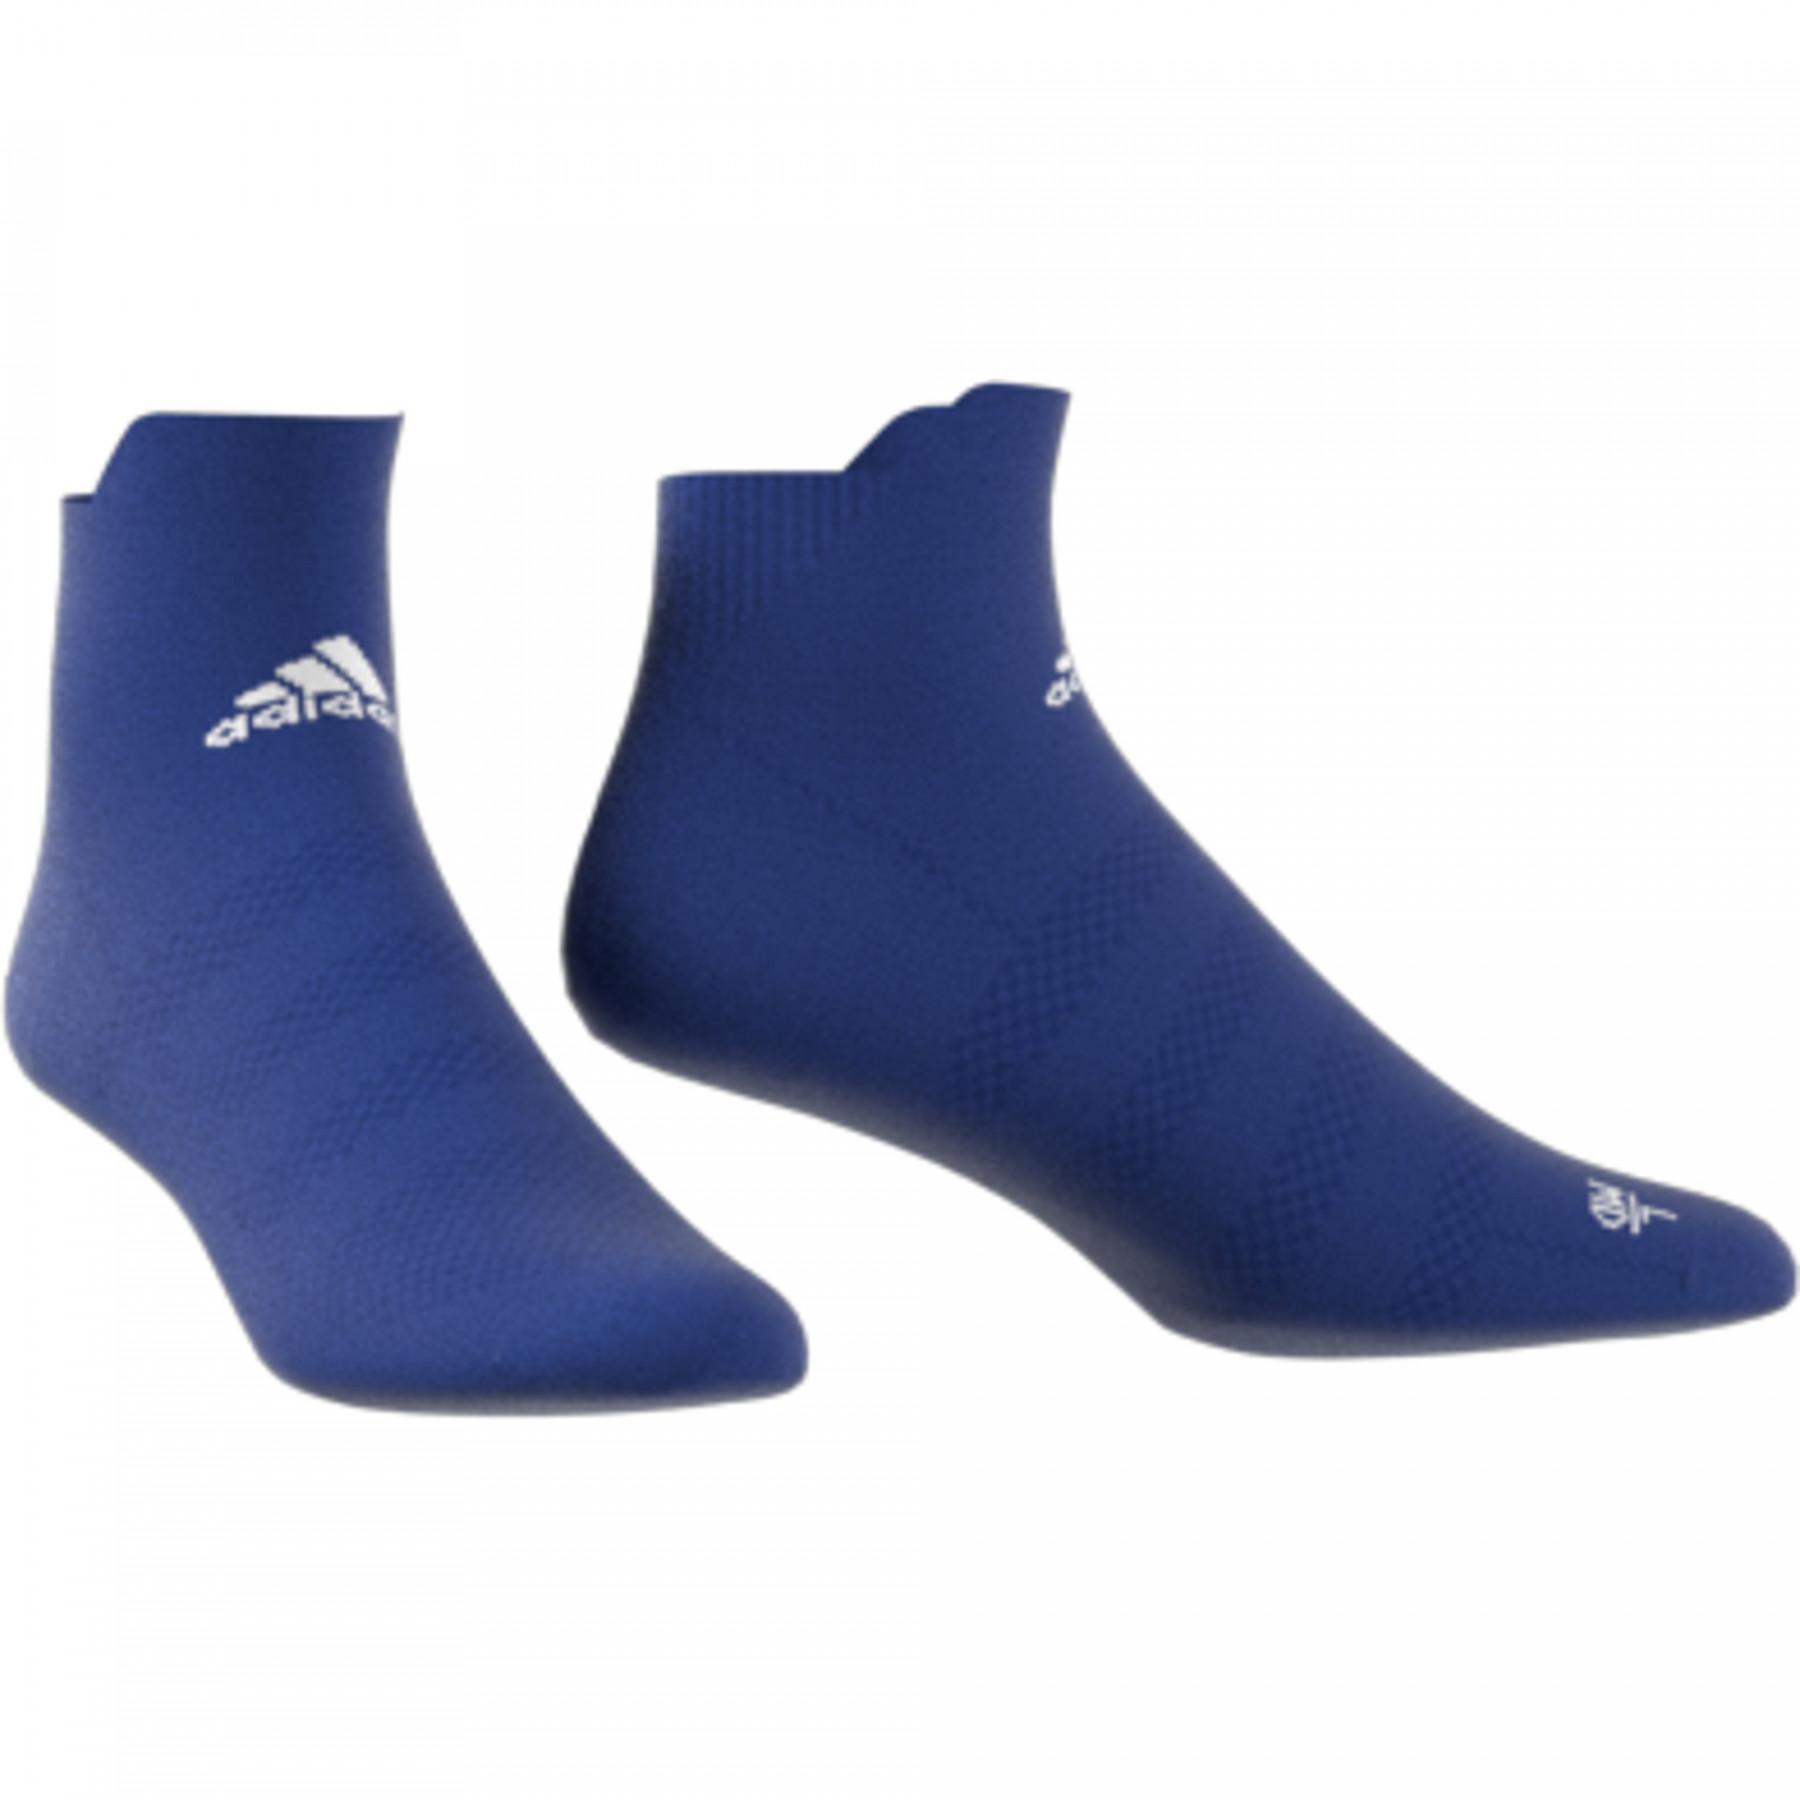 Socken adidas Alphaskin Ultralight